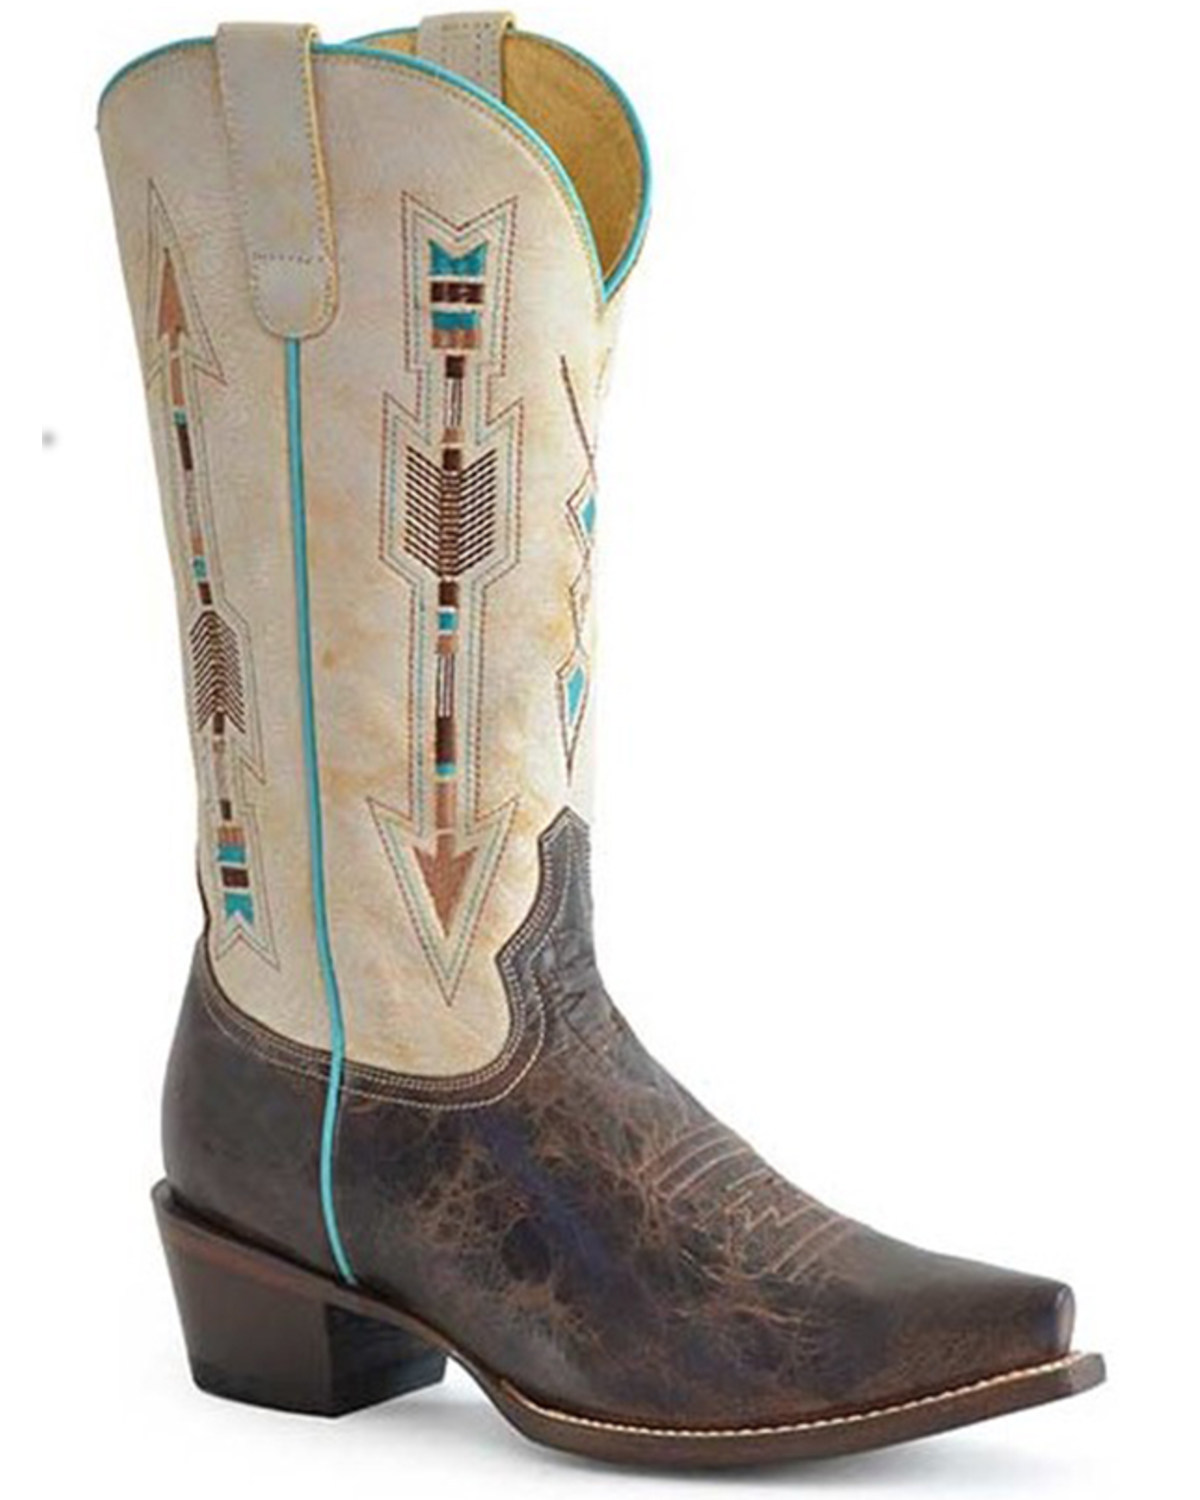 Roper Women's Arrows Western Boots - Snip Toe